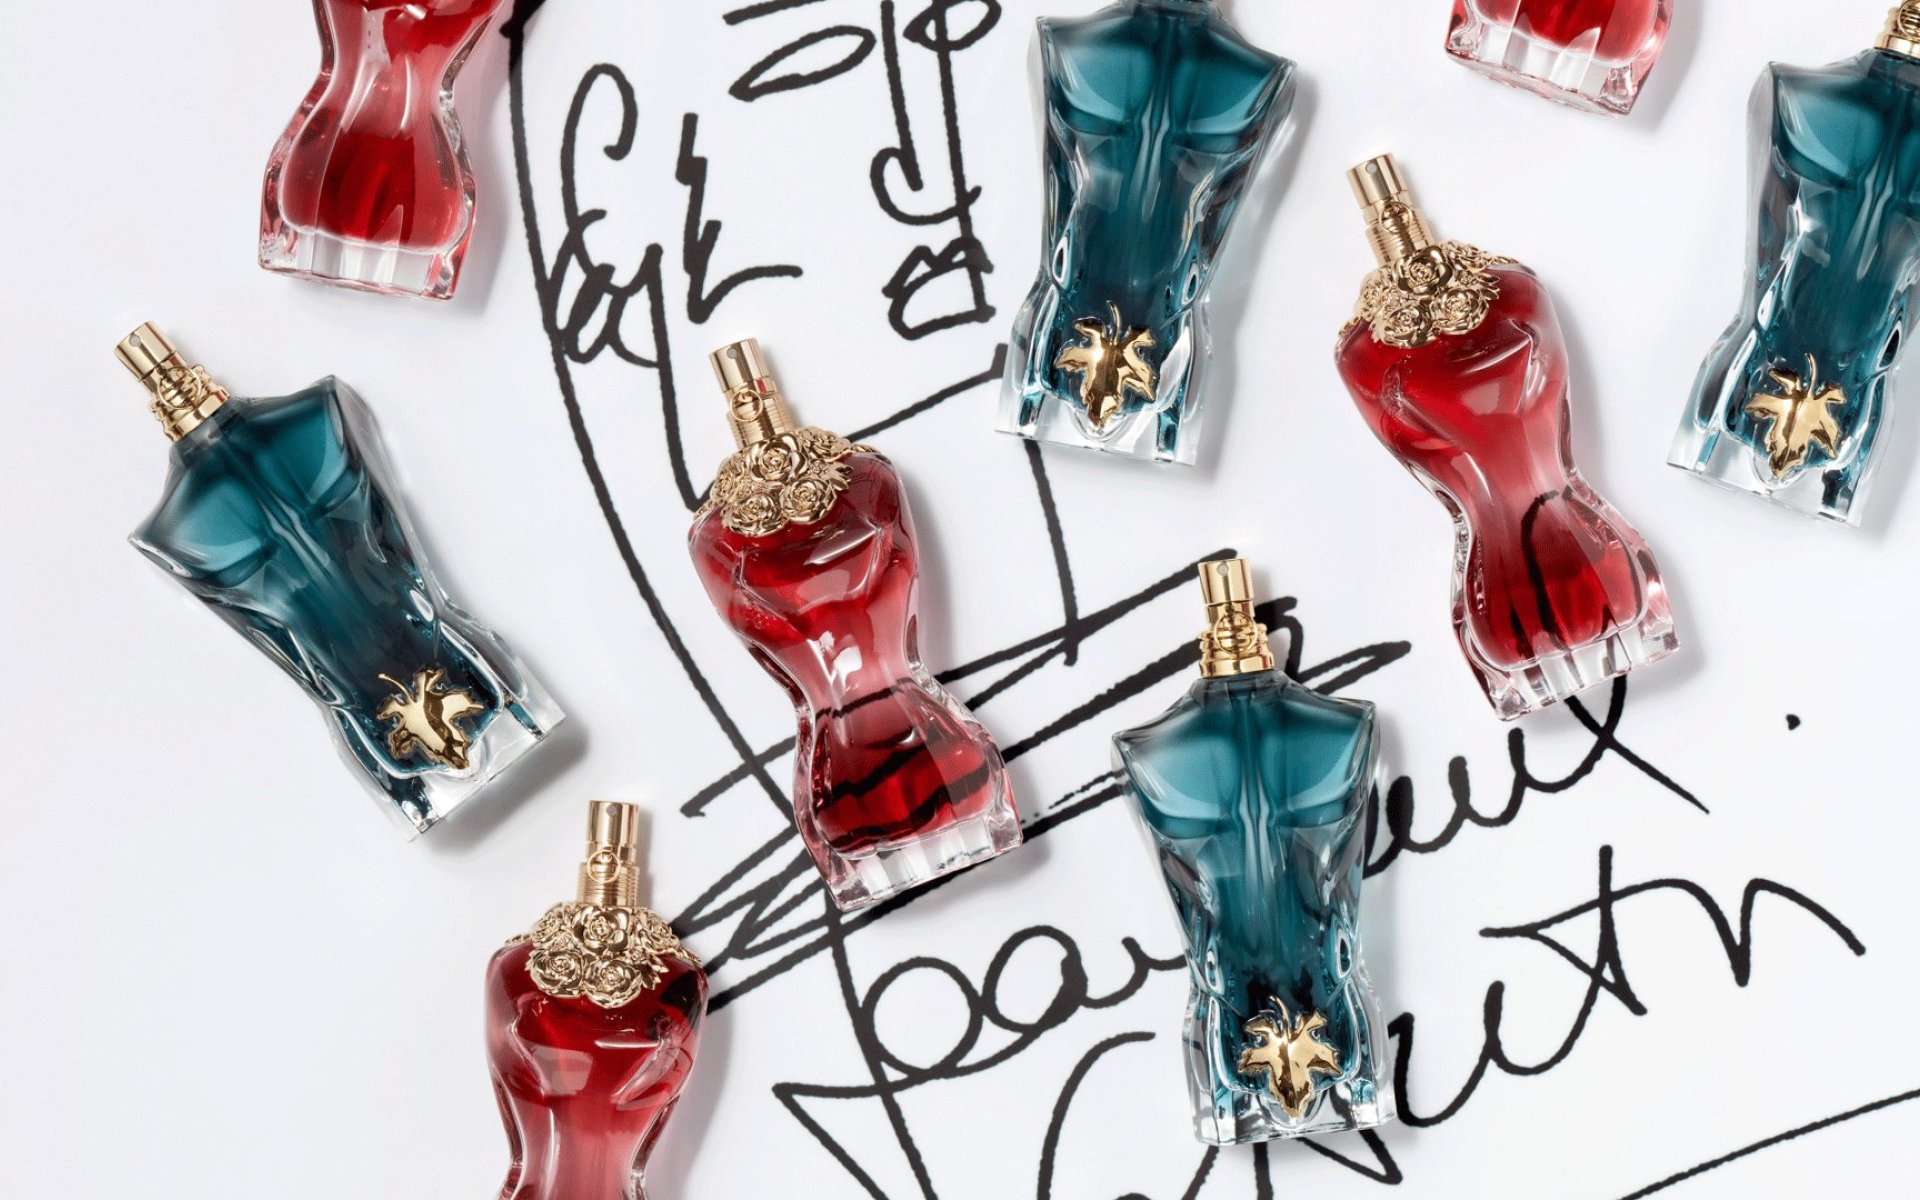 La Belle Eau de Parfum et Le Beau Eau de Toilette vue de haut, avec la signature Jean Paul Gaultier